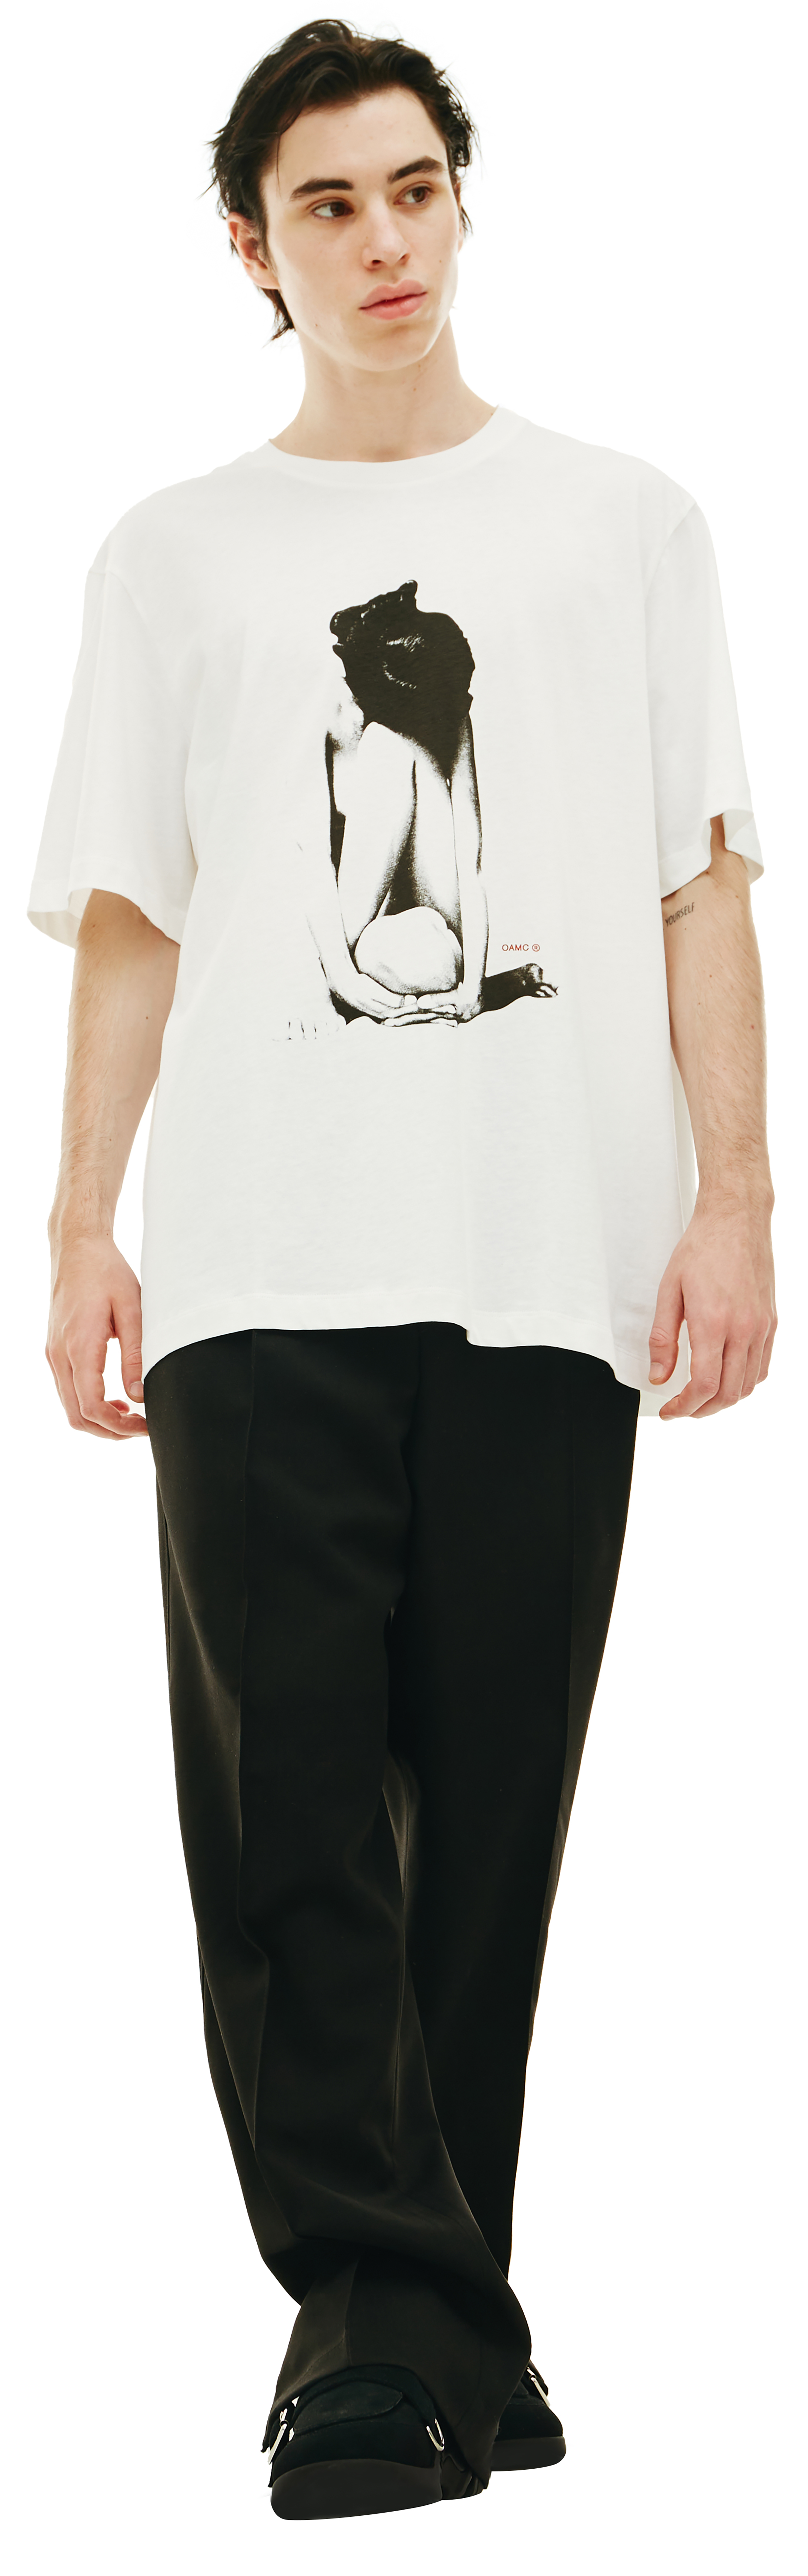 Buy OAMC men white cotton t-shirt for $210 online on SV77 